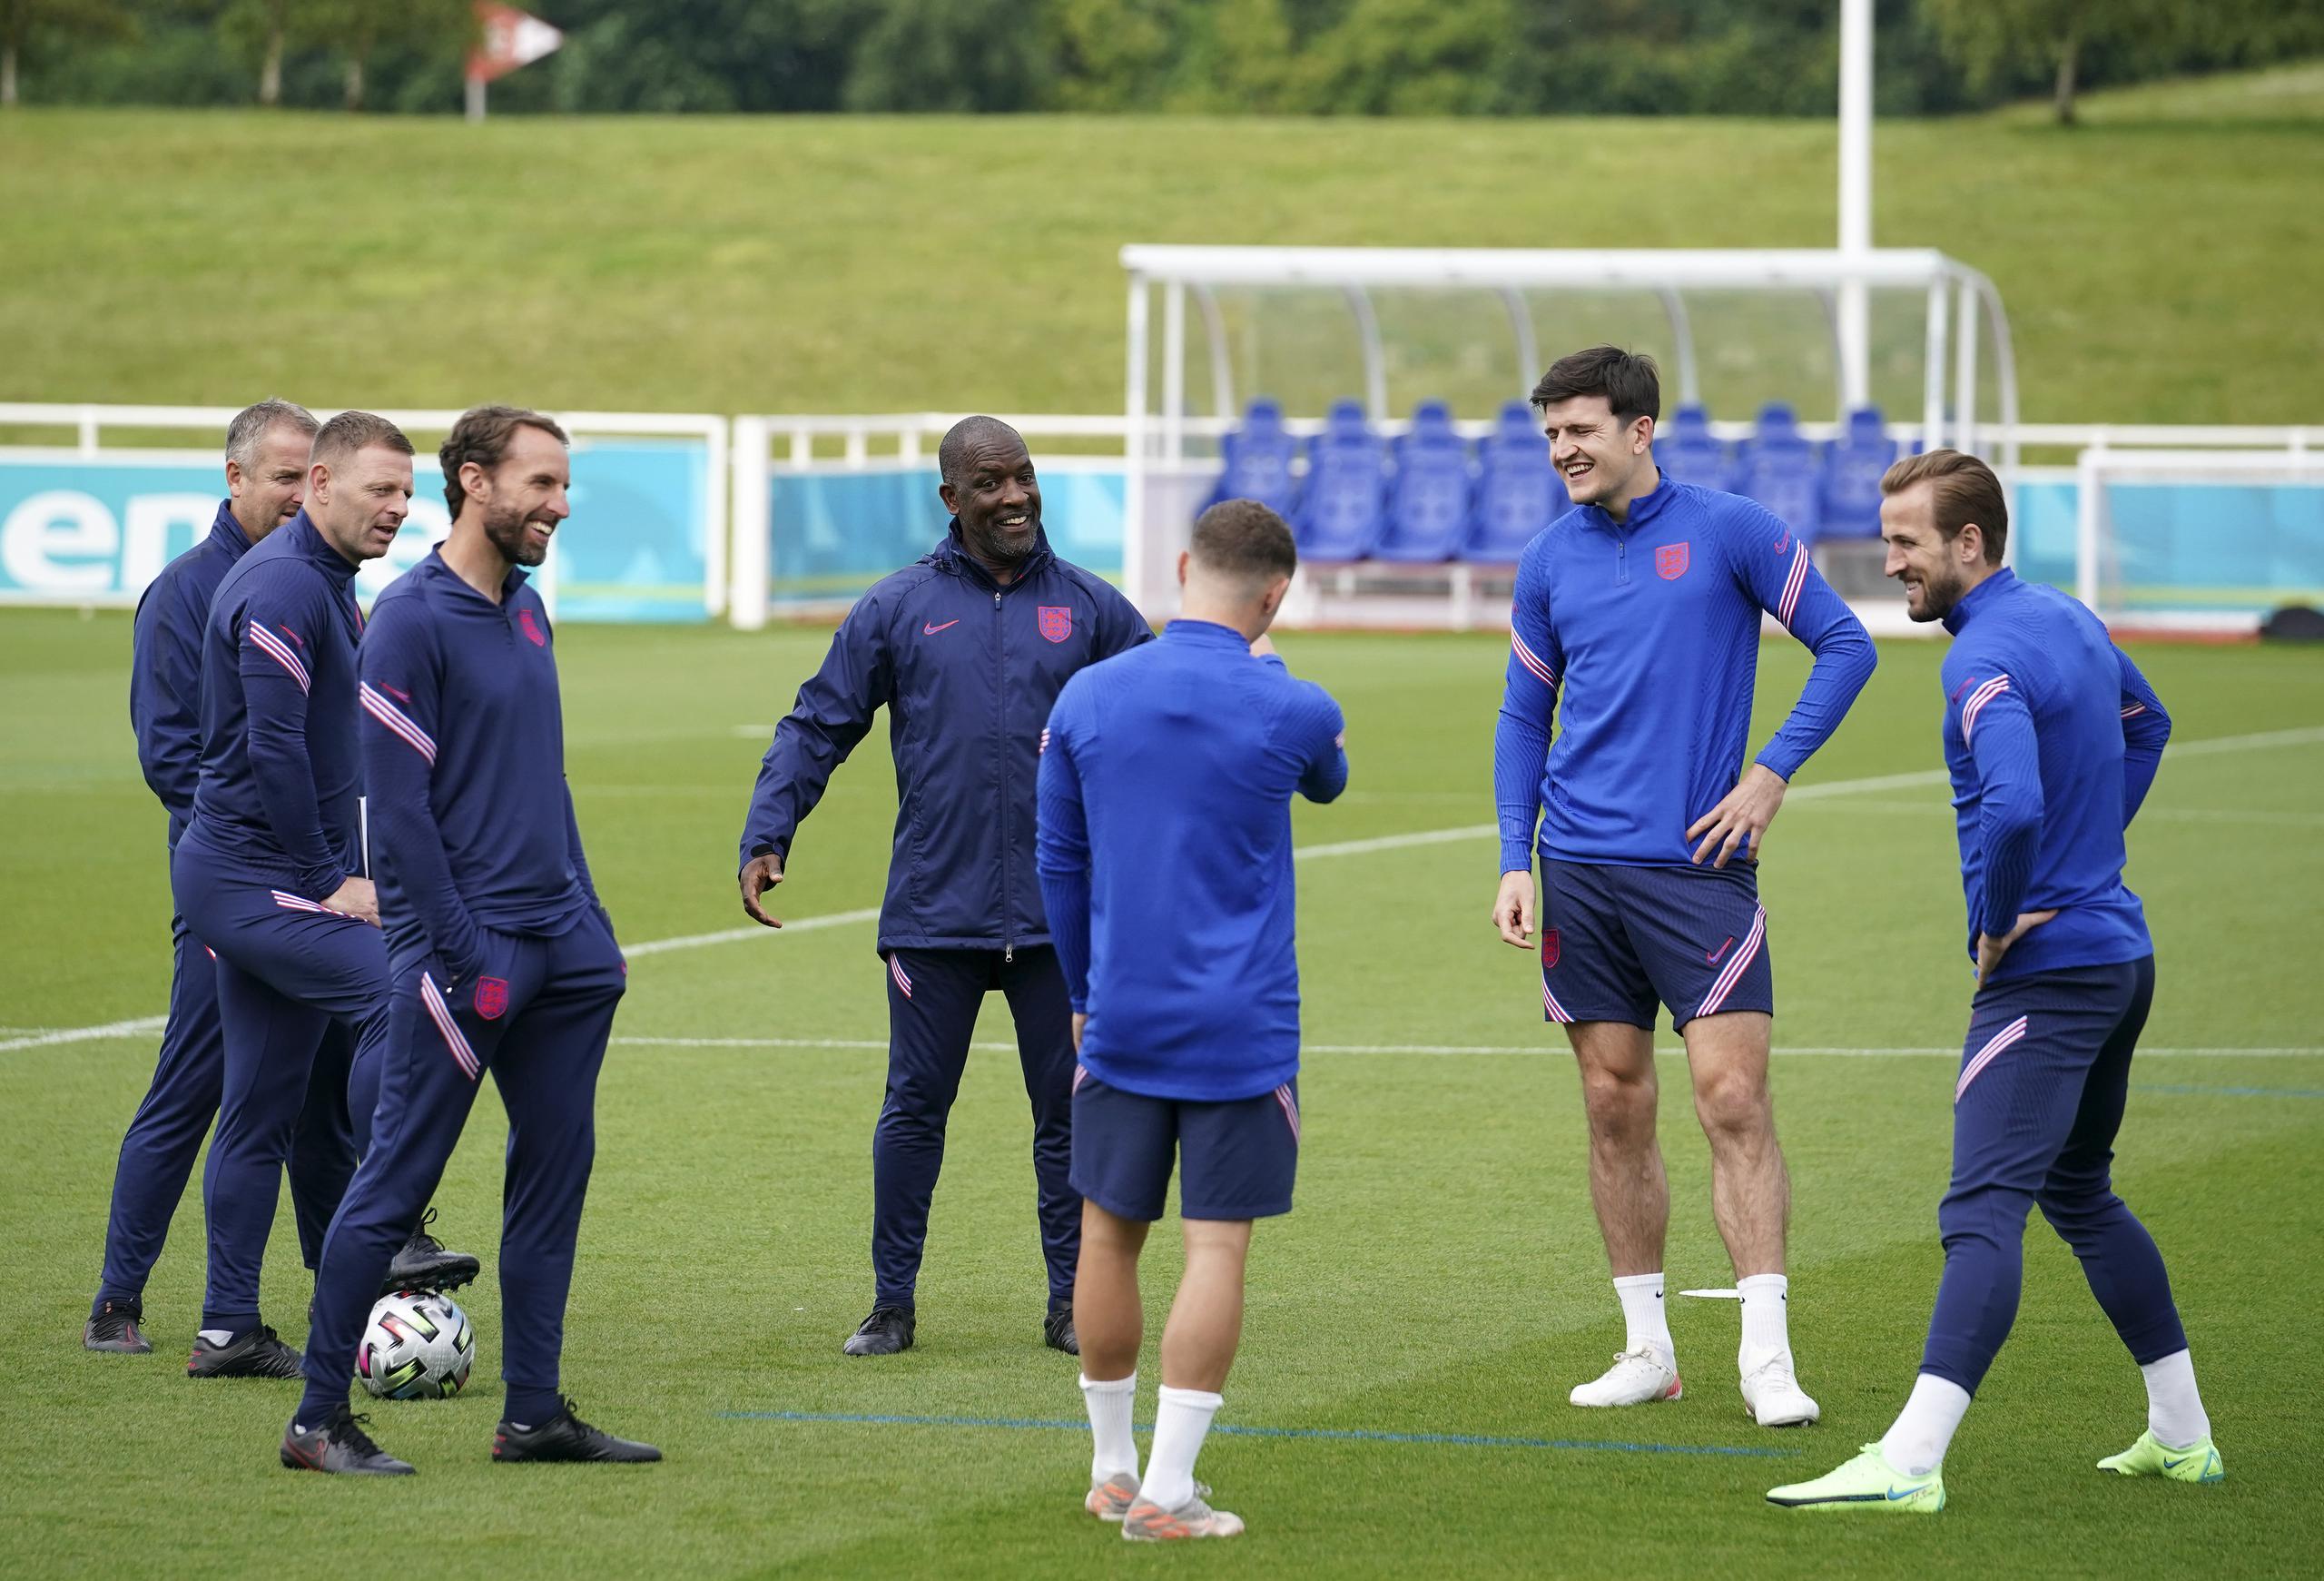 El dirigente de Inglaterra, Gareth Southgate, tercero desde la izquierda, charla con integrantes del seleccionado durante una práctica realizada el sábado, la última antes de la final de la Eurocopa del domingo.